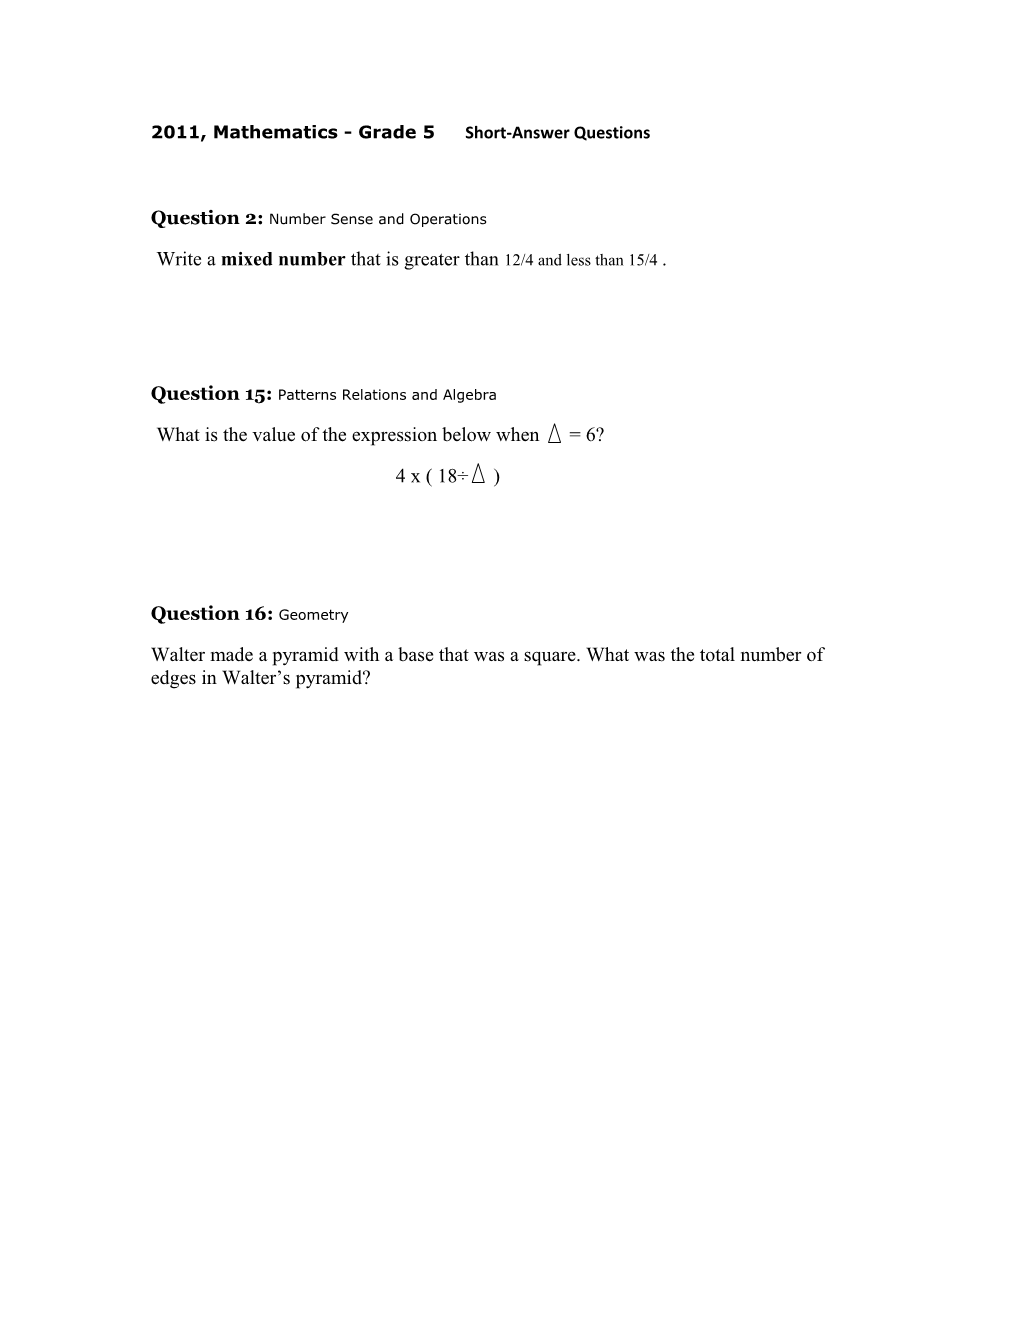 2011, Mathematics - Grade 5 Short-Answer Questions